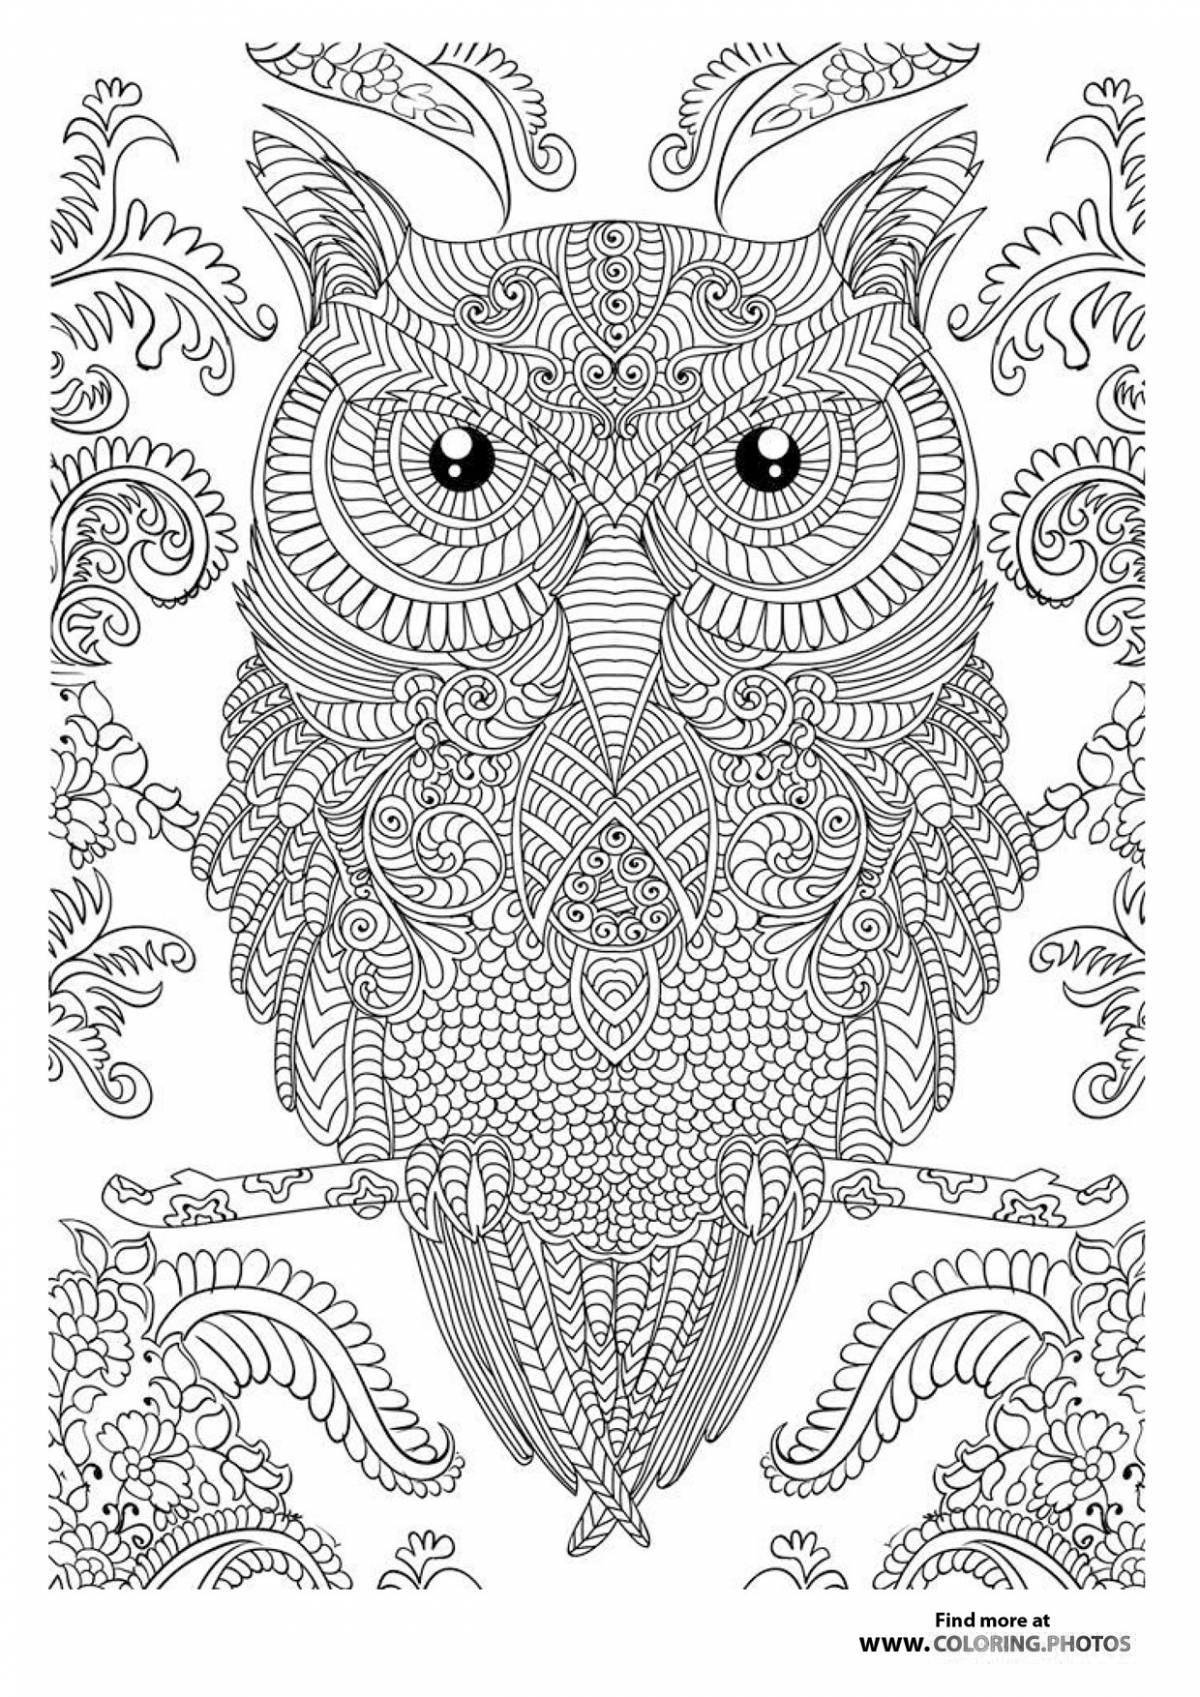 Complex owl art coloring